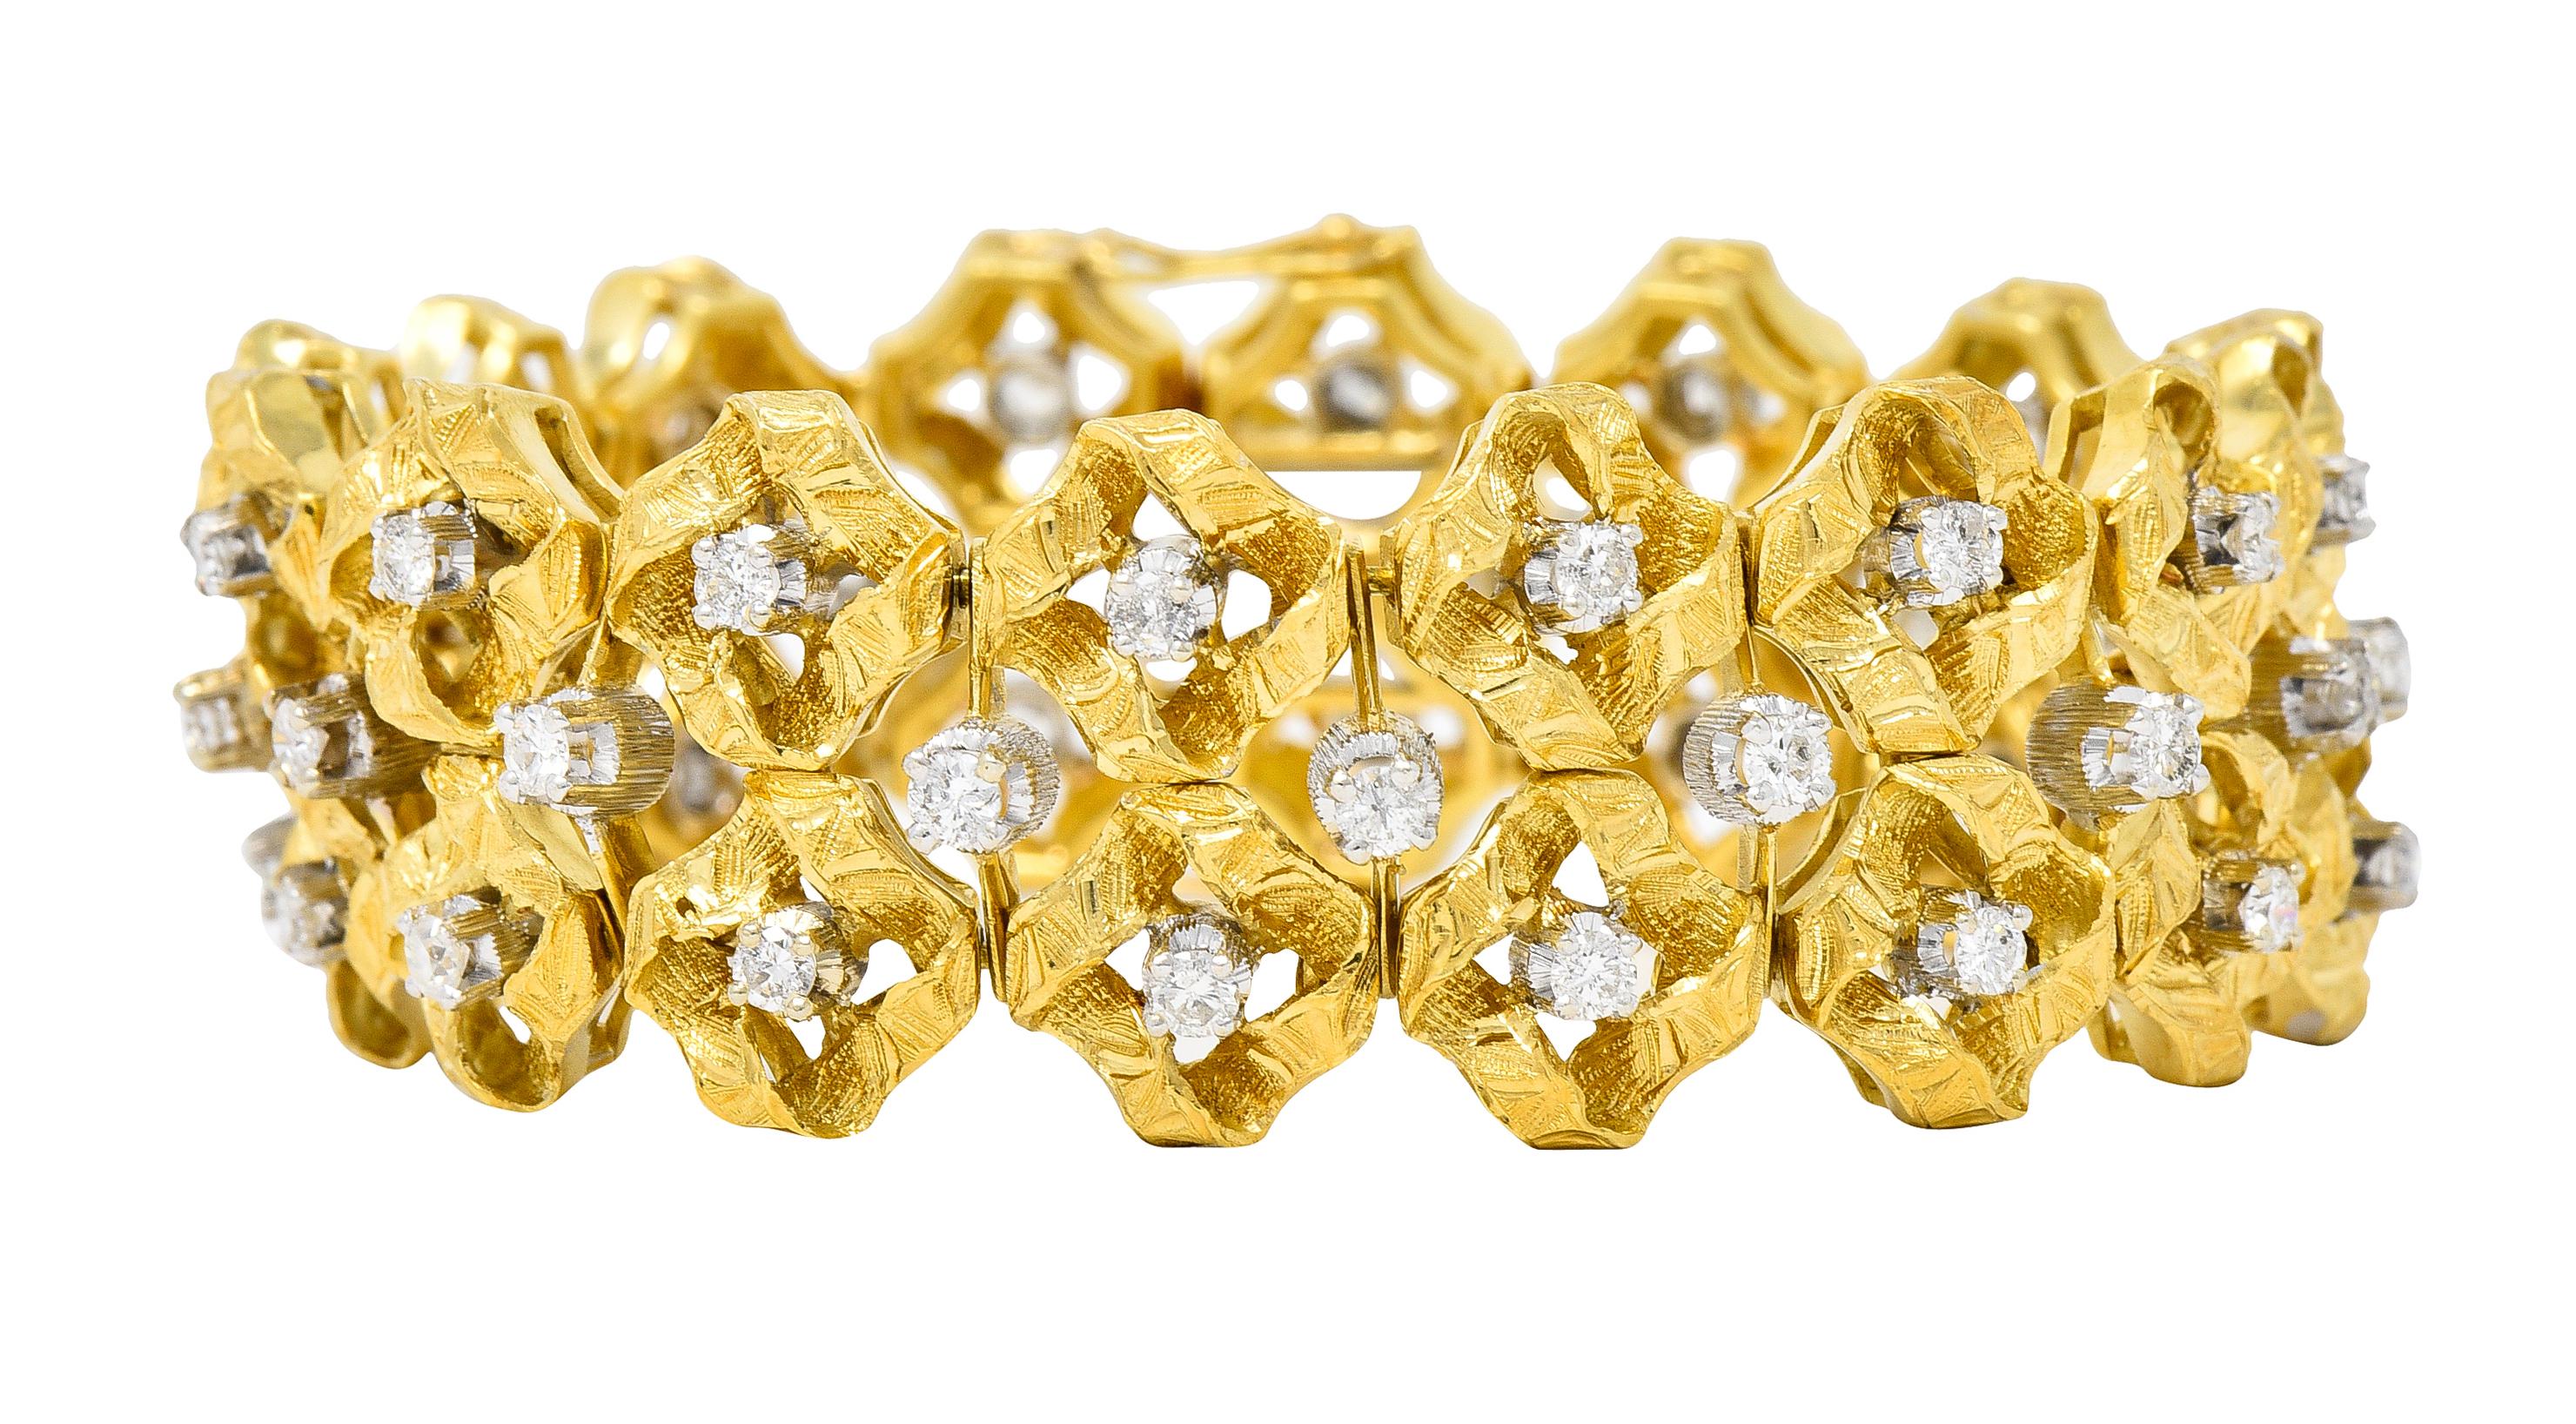 Bestehend aus Gliedersegmenten mit Scharnieren, die mit runden Diamanten im Brillantschliff besetzt sind.
Mit einem Gesamtgewicht von etwa 2,88 Karat - Farbe G/H und Reinheit VS
Das in Weißgold gefasste und in Gelbgold zentrierte Bandmotiv